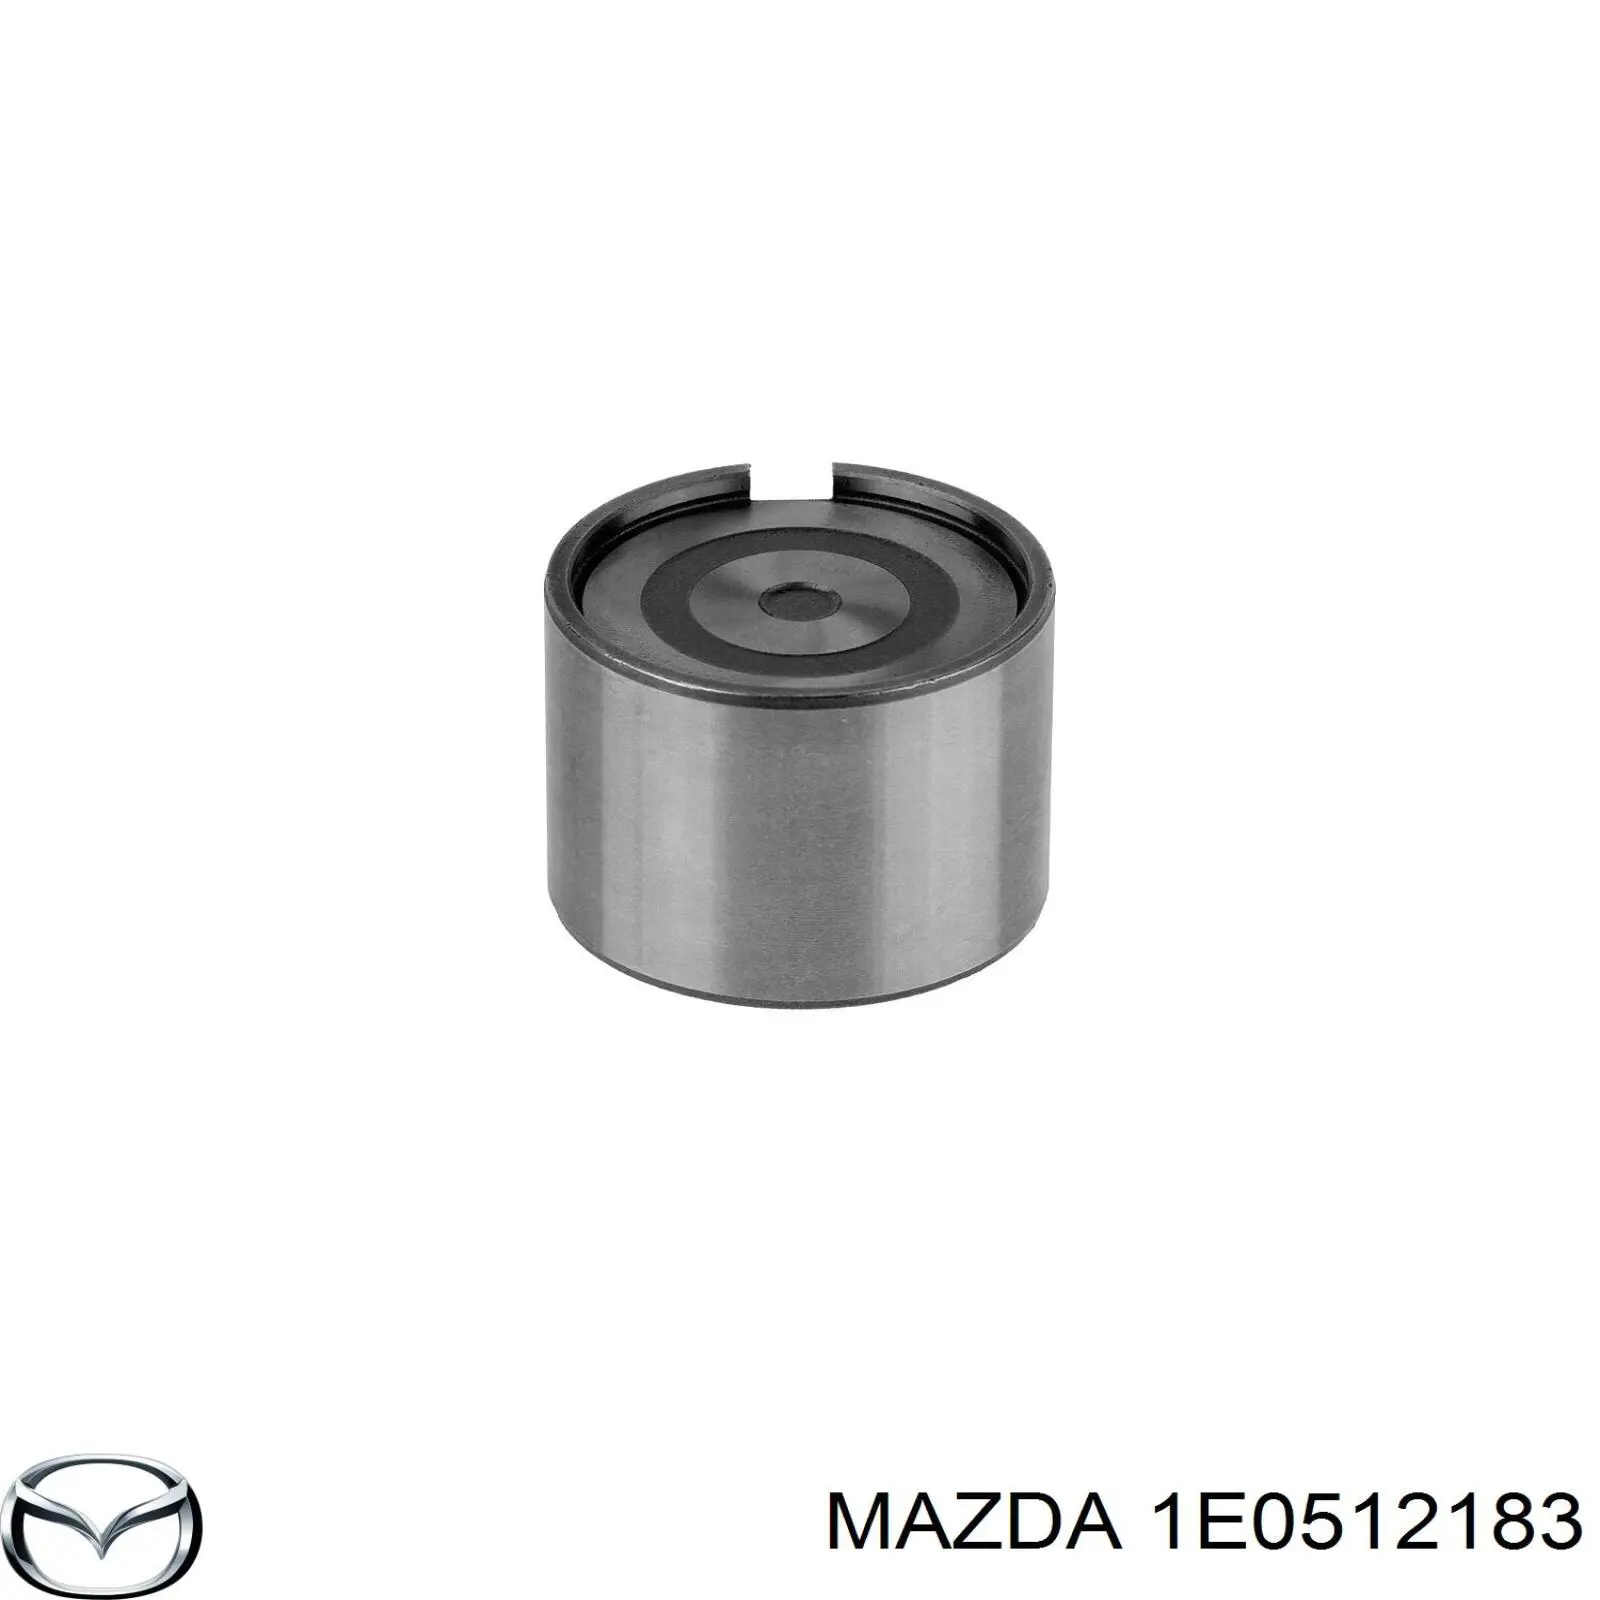 Гидрокомпенсатор (гидротолкатель), толкатель клапанов Mazda 1E0512183